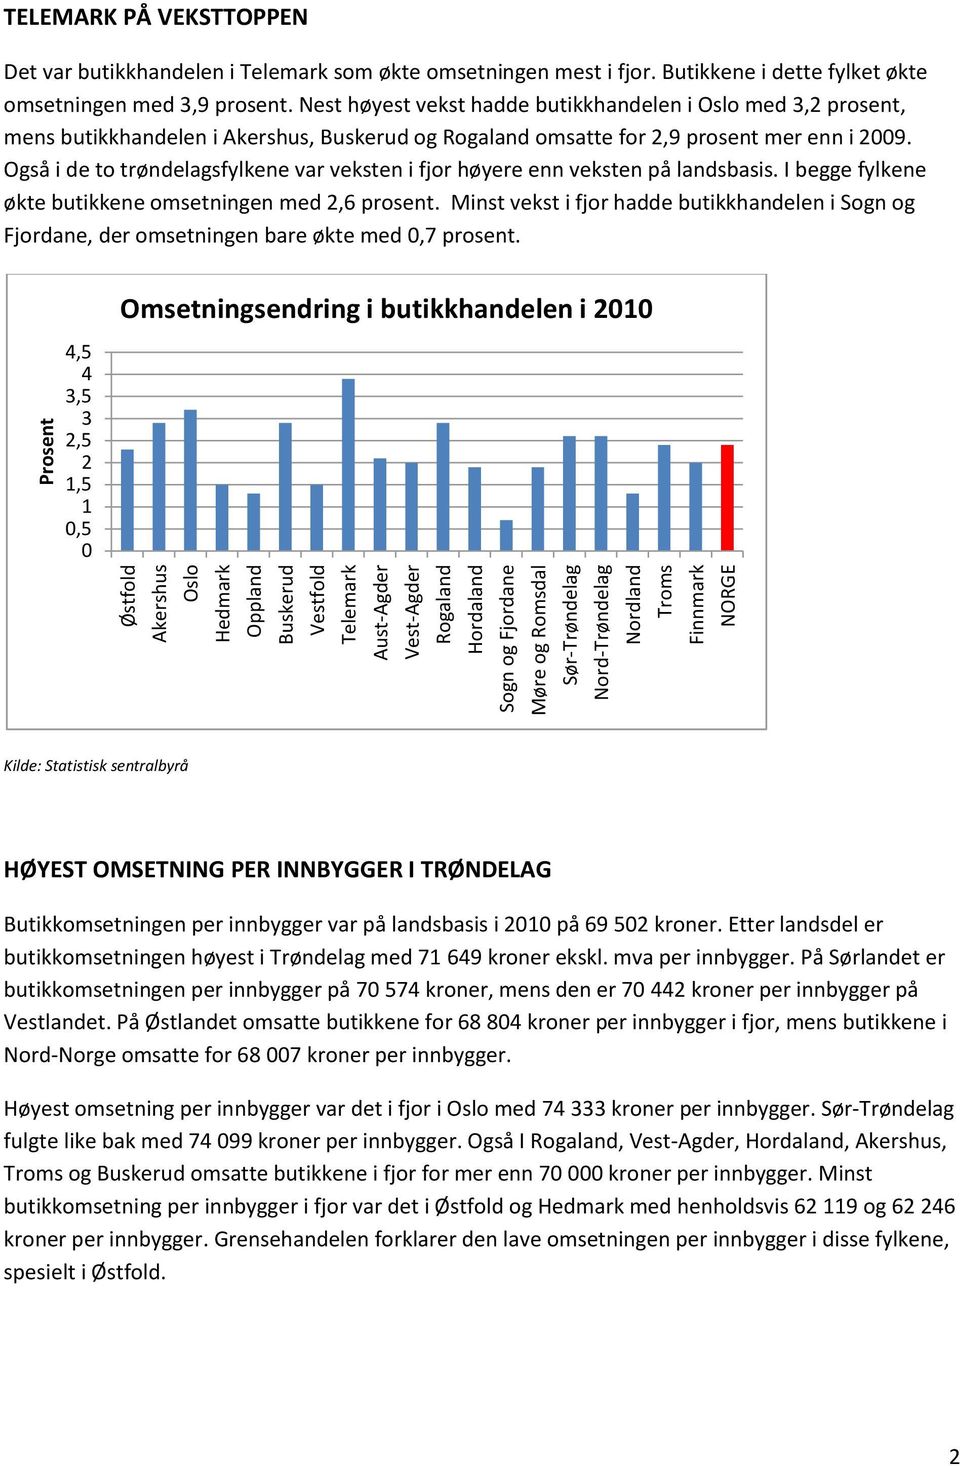 Nest høyest vekst hadde butikkhandelen i Oslo med 3,2 prosent, mens butikkhandelen i Akershus, Buskerud og Rogaland omsatte for 2,9 prosent mer enn i 2009.